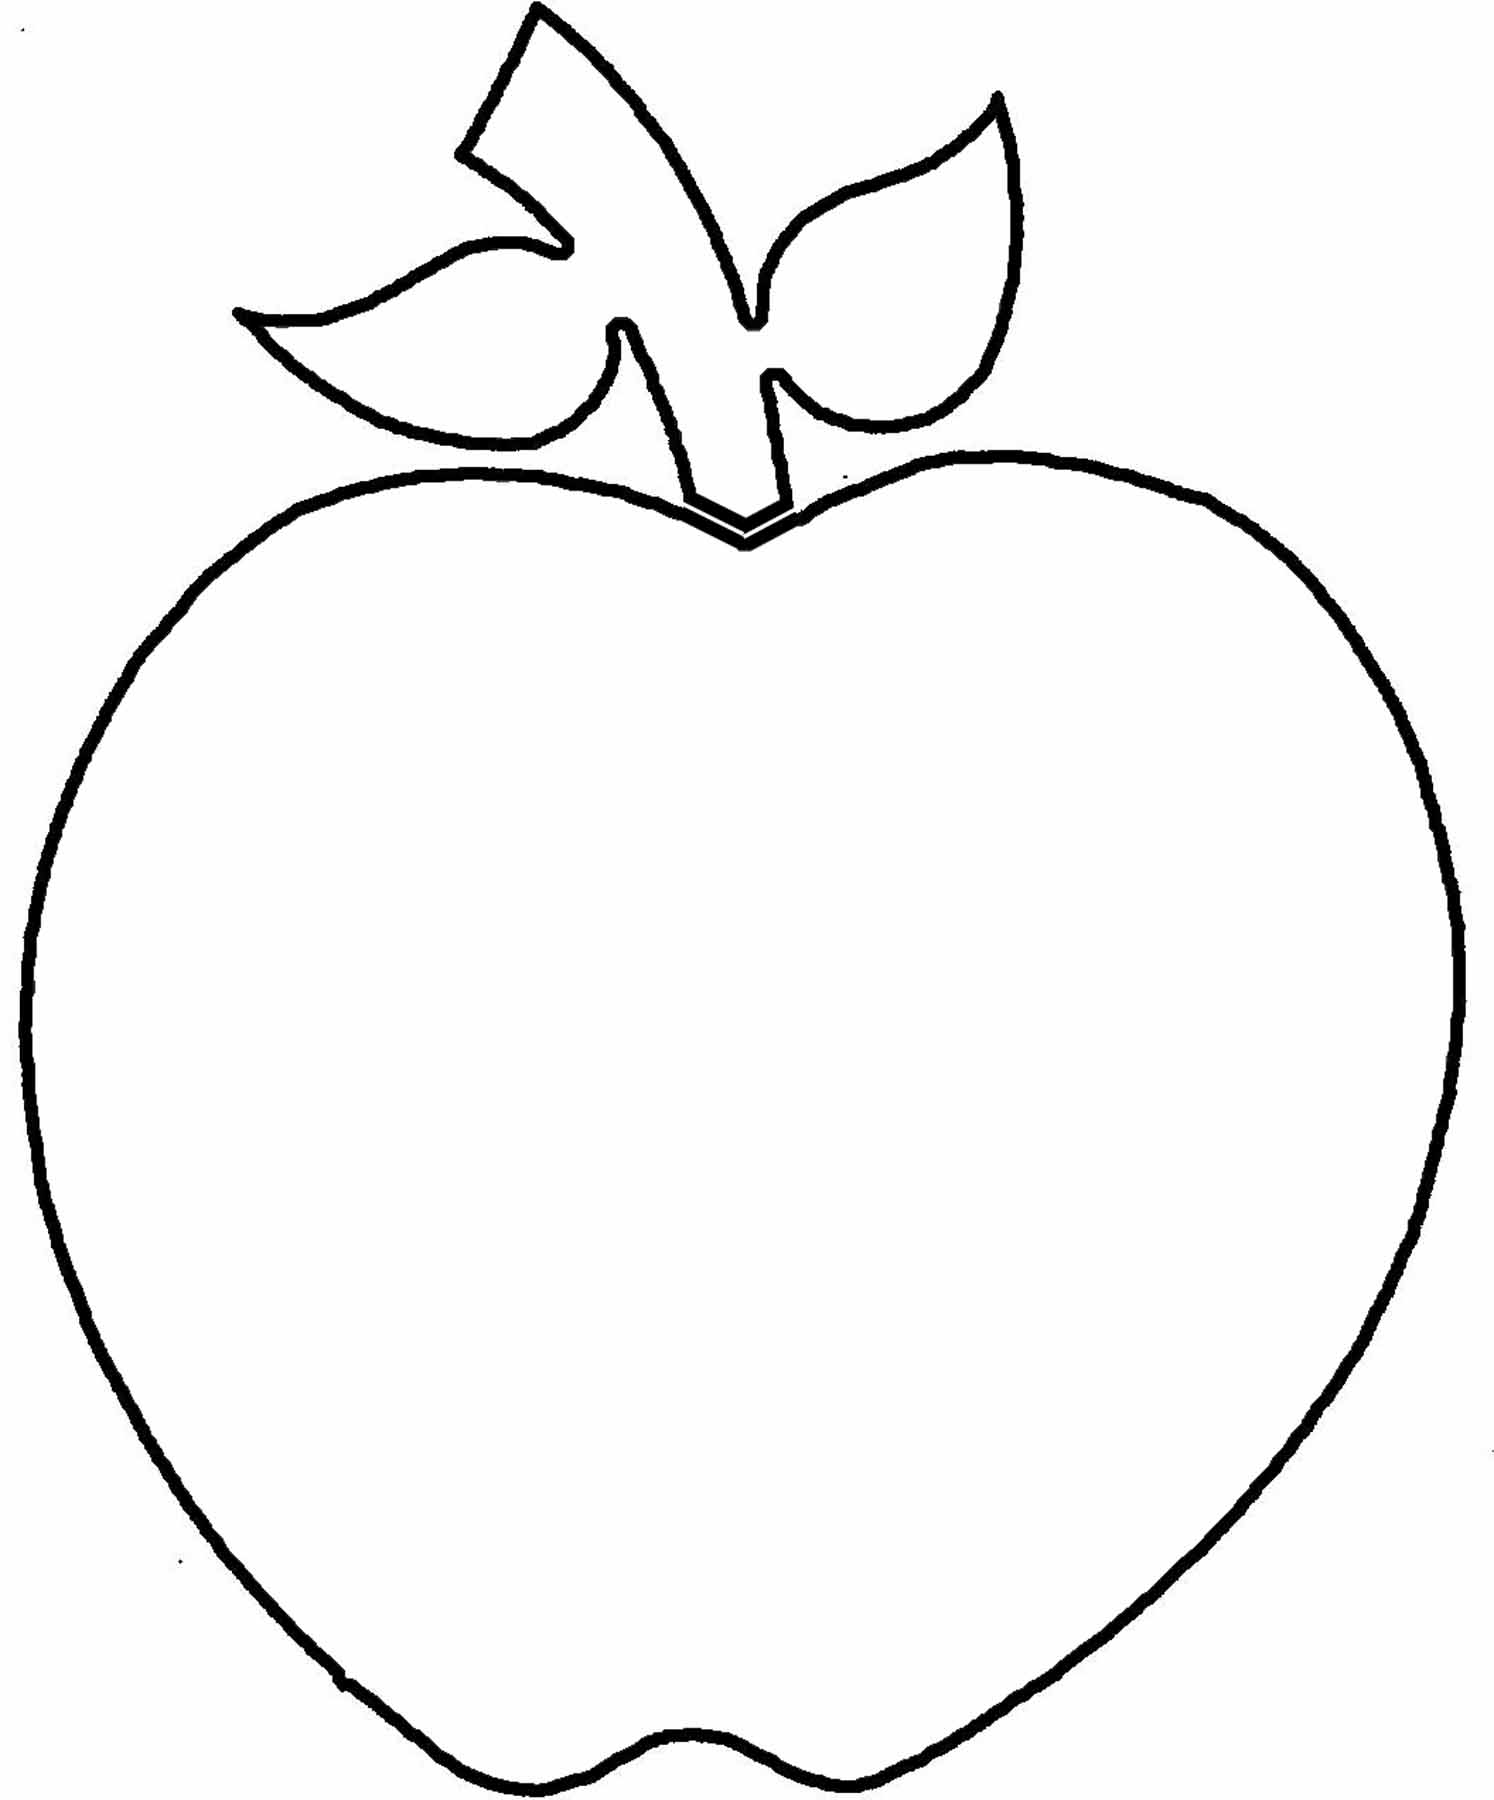 Apple Outline Food Fruit Apple Apple Outline Png Html